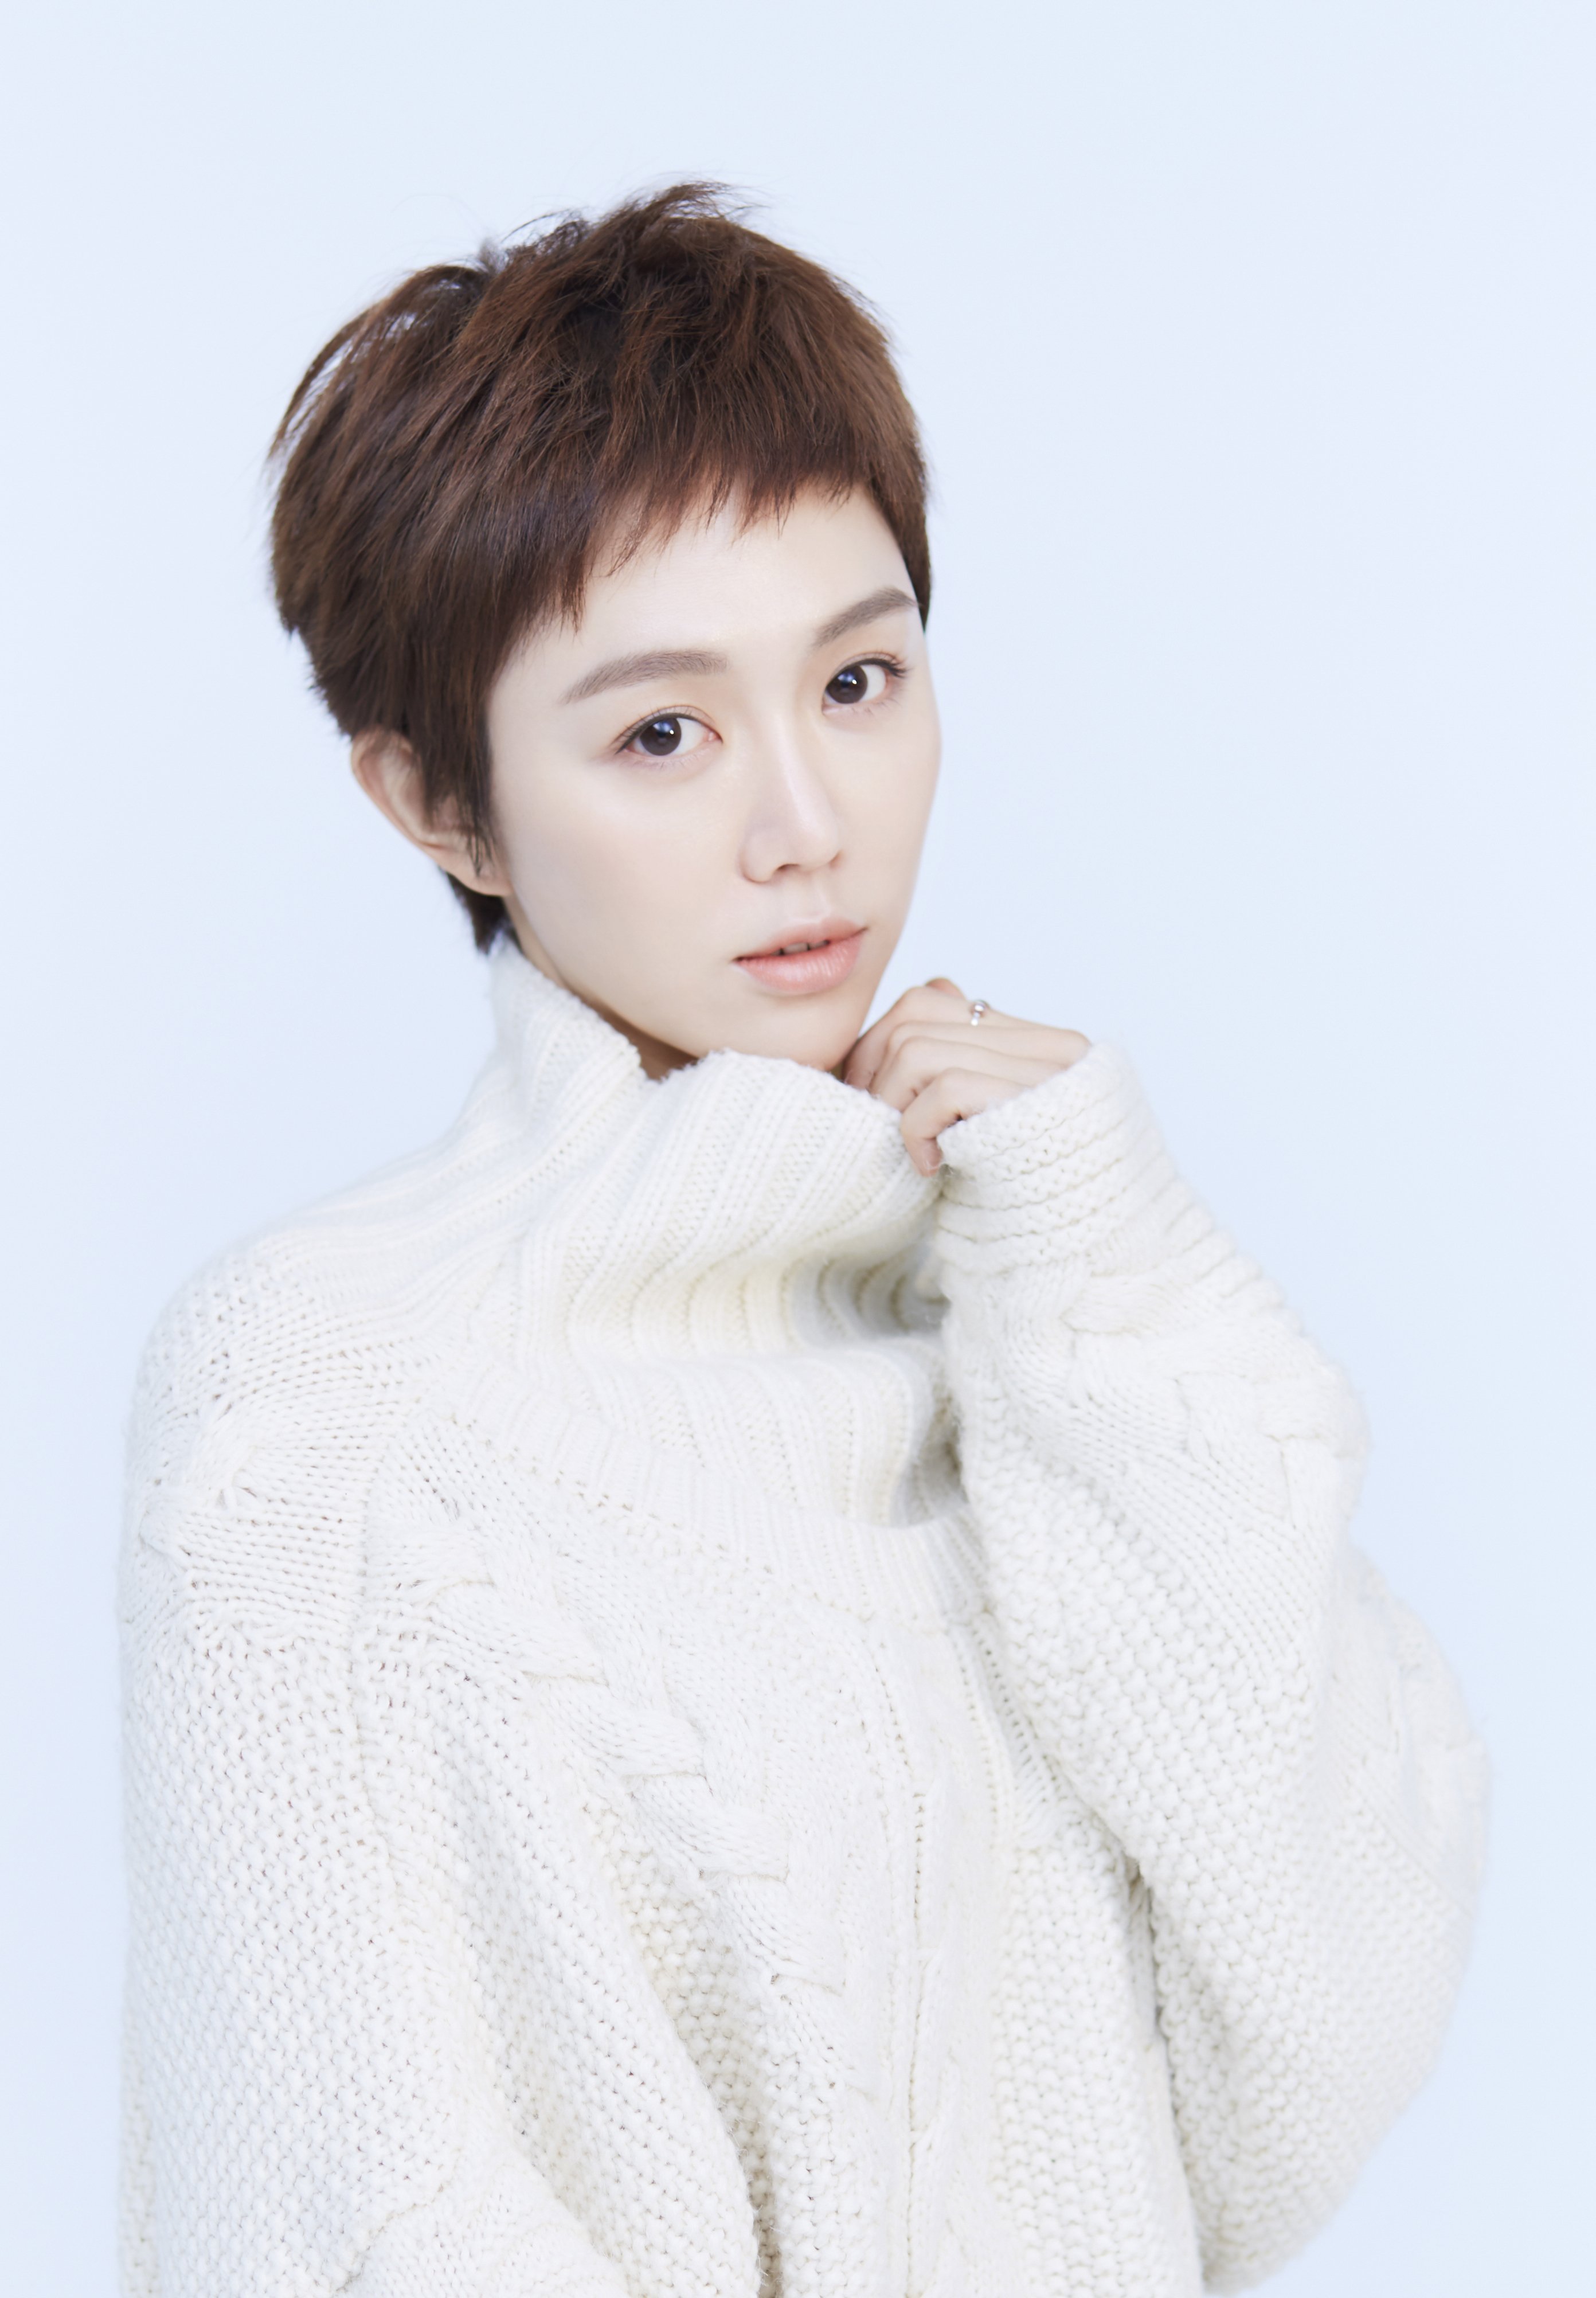 姜妍,1986年2月19日出生于大连,中国内地女演员,毕业于北京电影学院